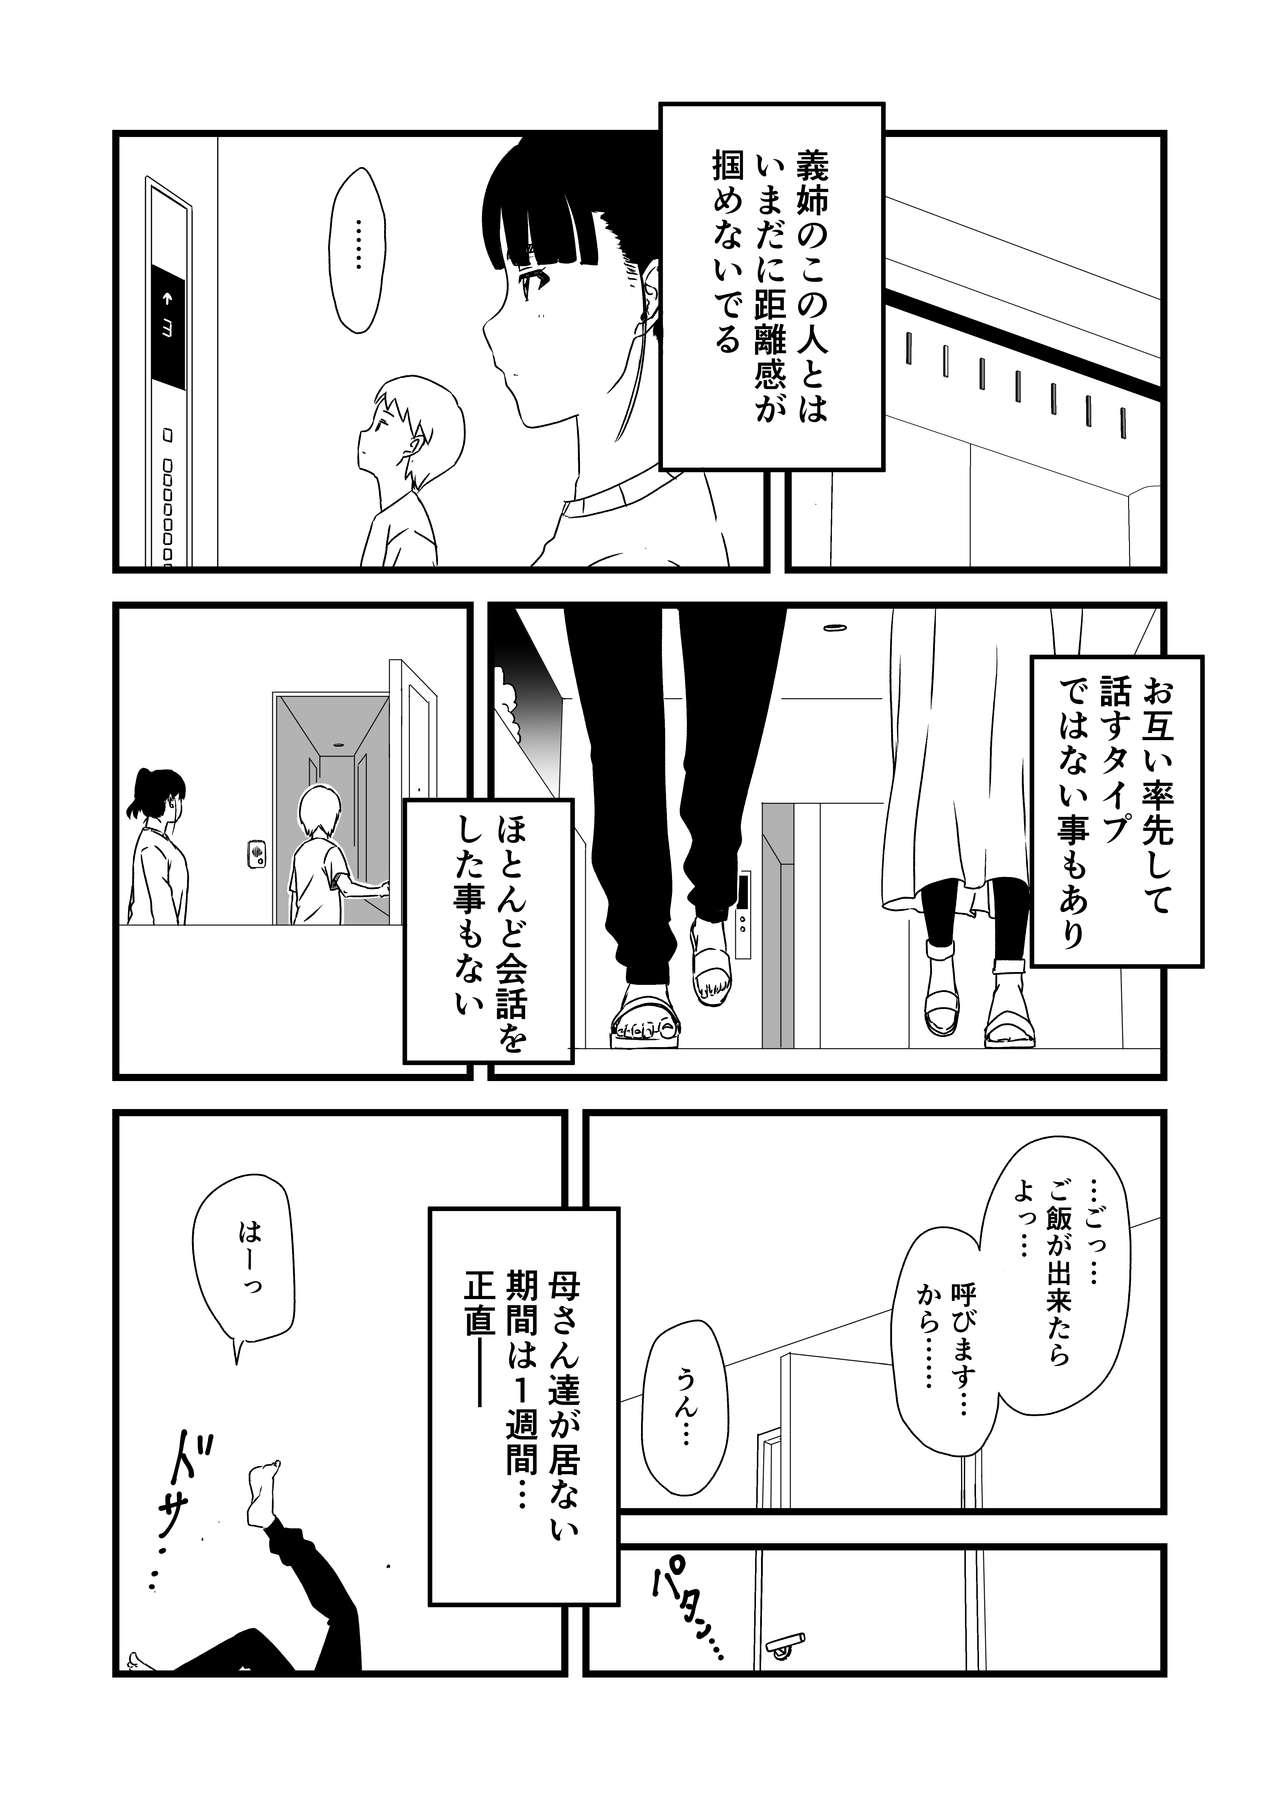 Masterbate [Senaka] Giri no Ane to no 7-kakan Seikatsu - 1 - Original Skinny - Page 7